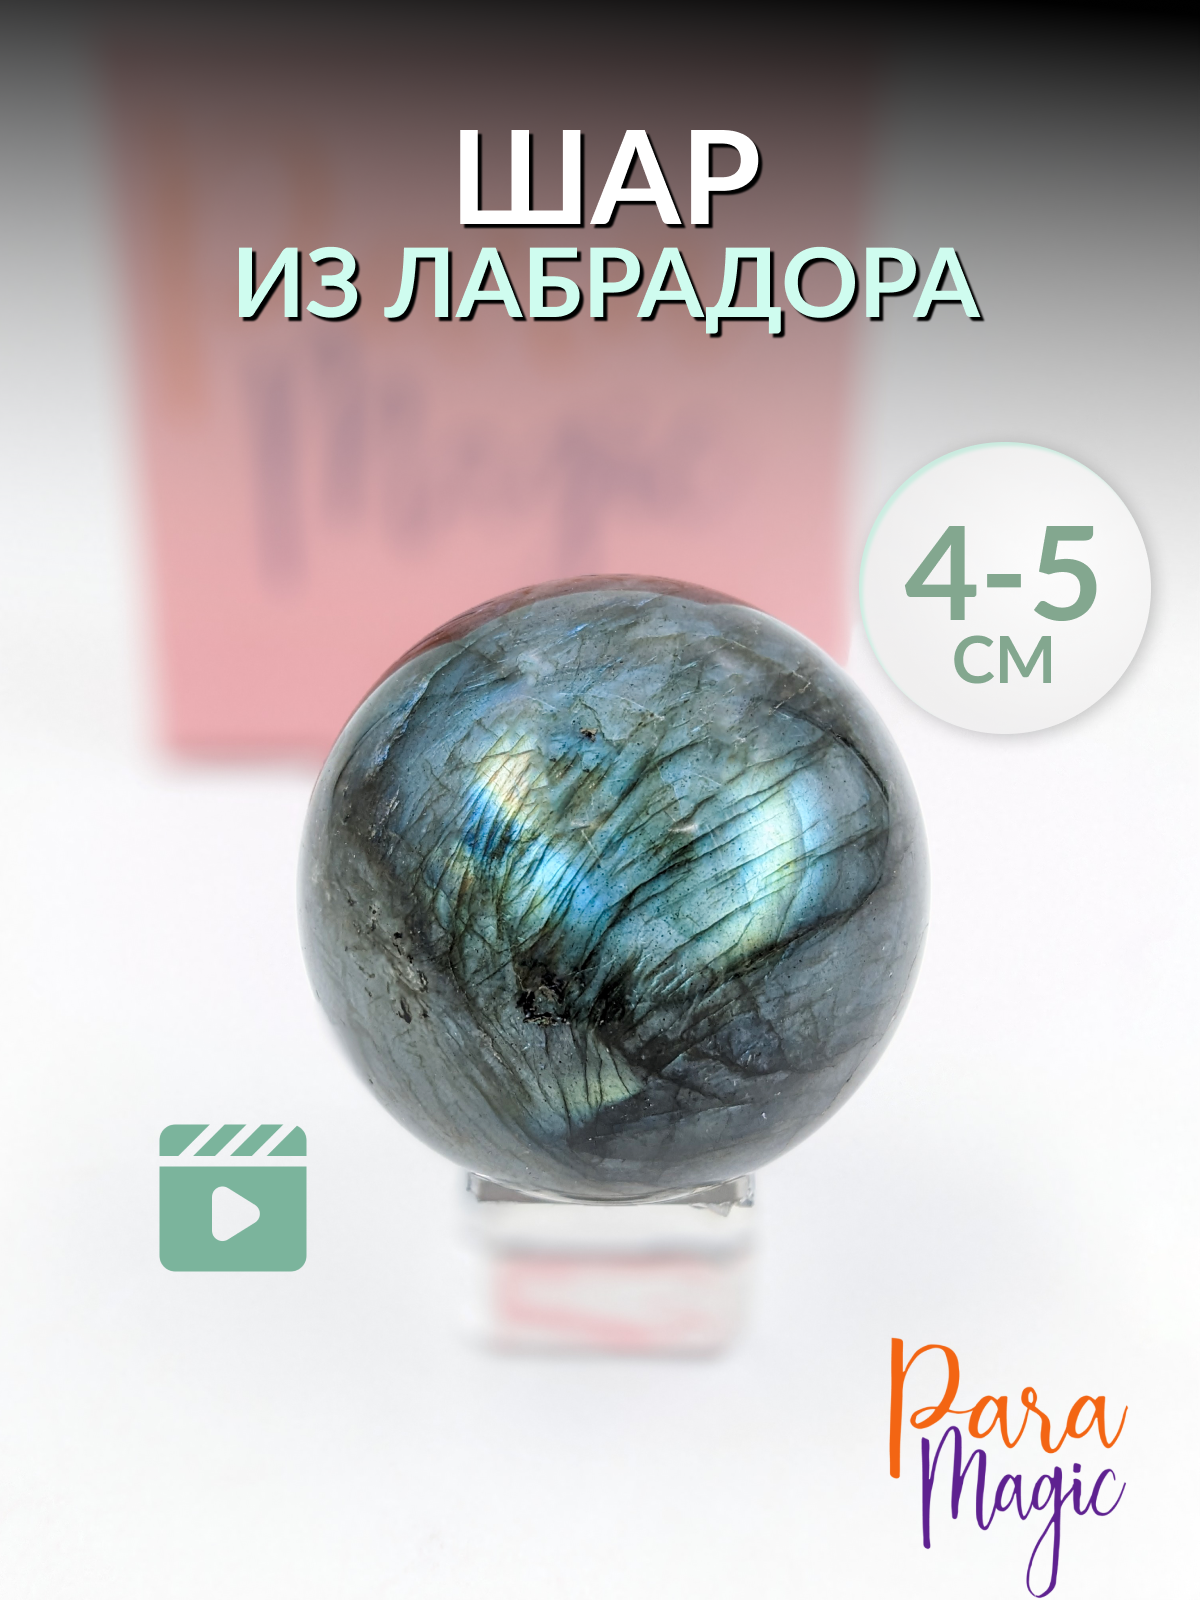 Лабрадор шар, натуральный камень, размер: 4-5см